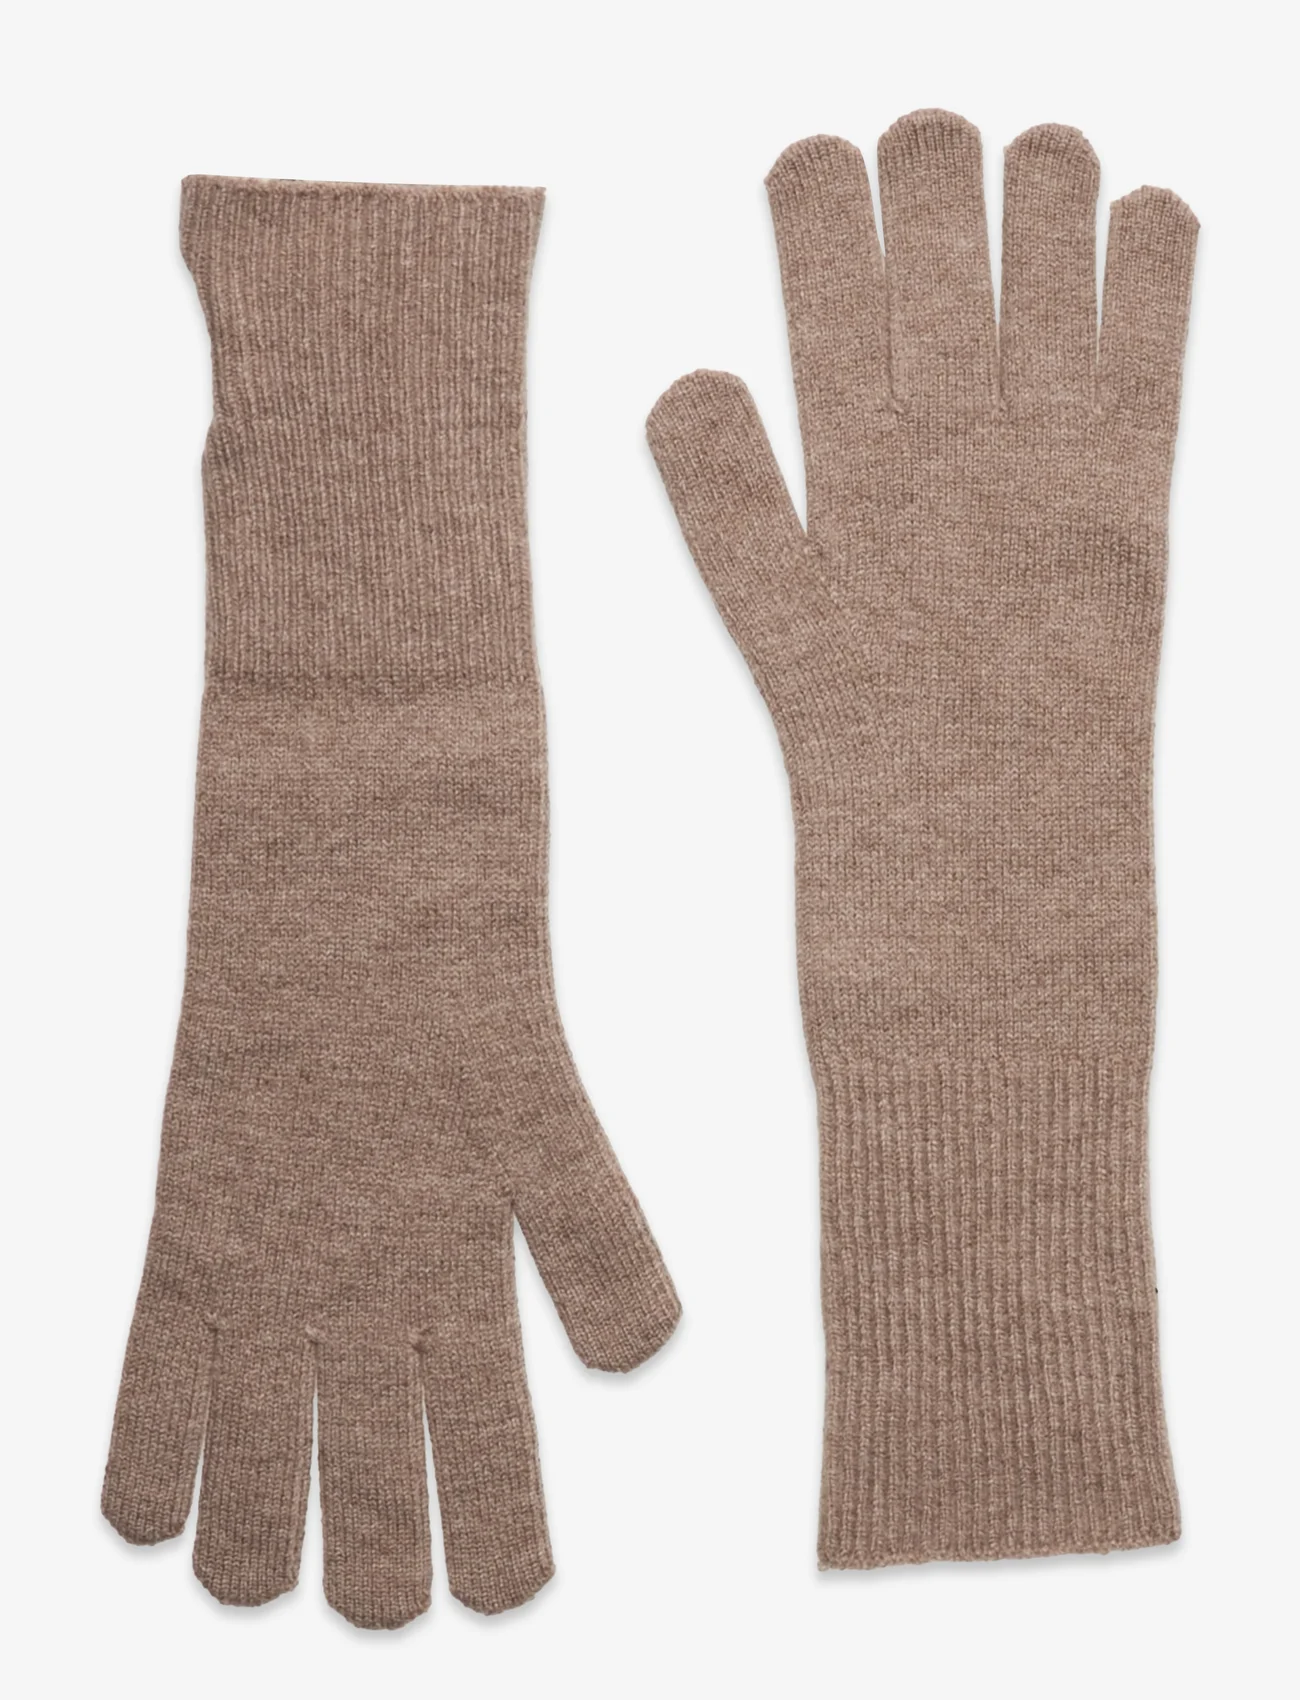 Becksöndergaard - Woona Long Gloves - geburtstagsgeschenke - dark beige melange - 0